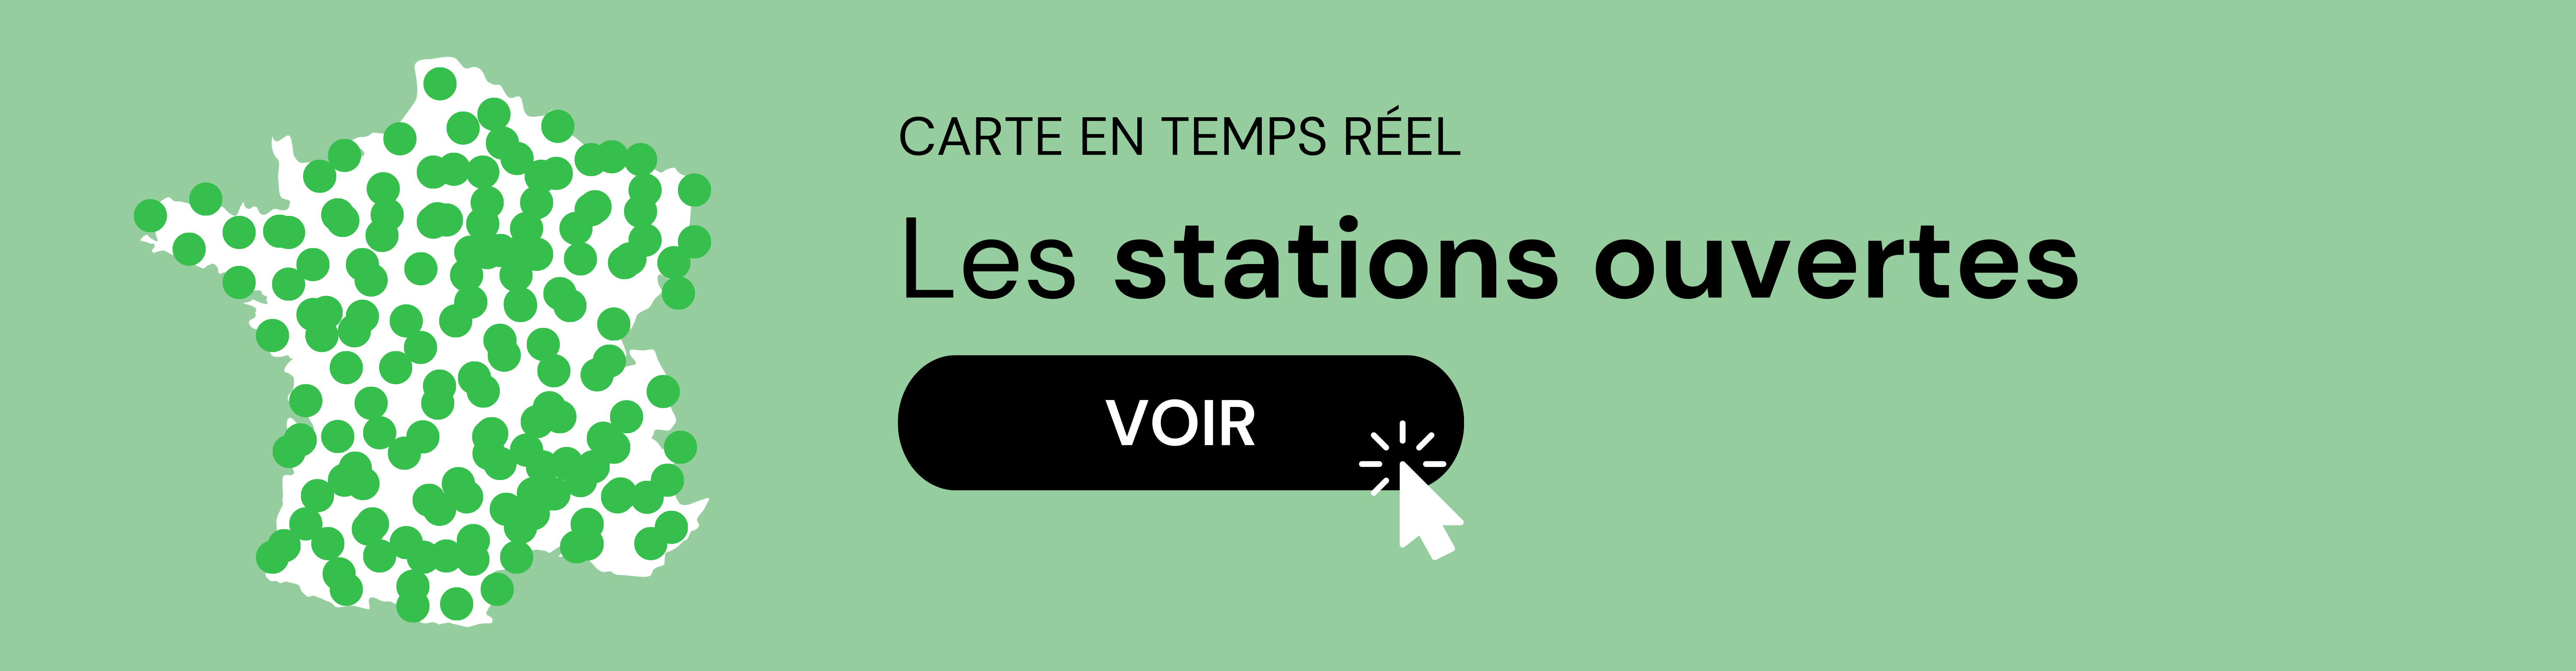 Carte des stations ouvertes et approvisionnées en temps réel en France